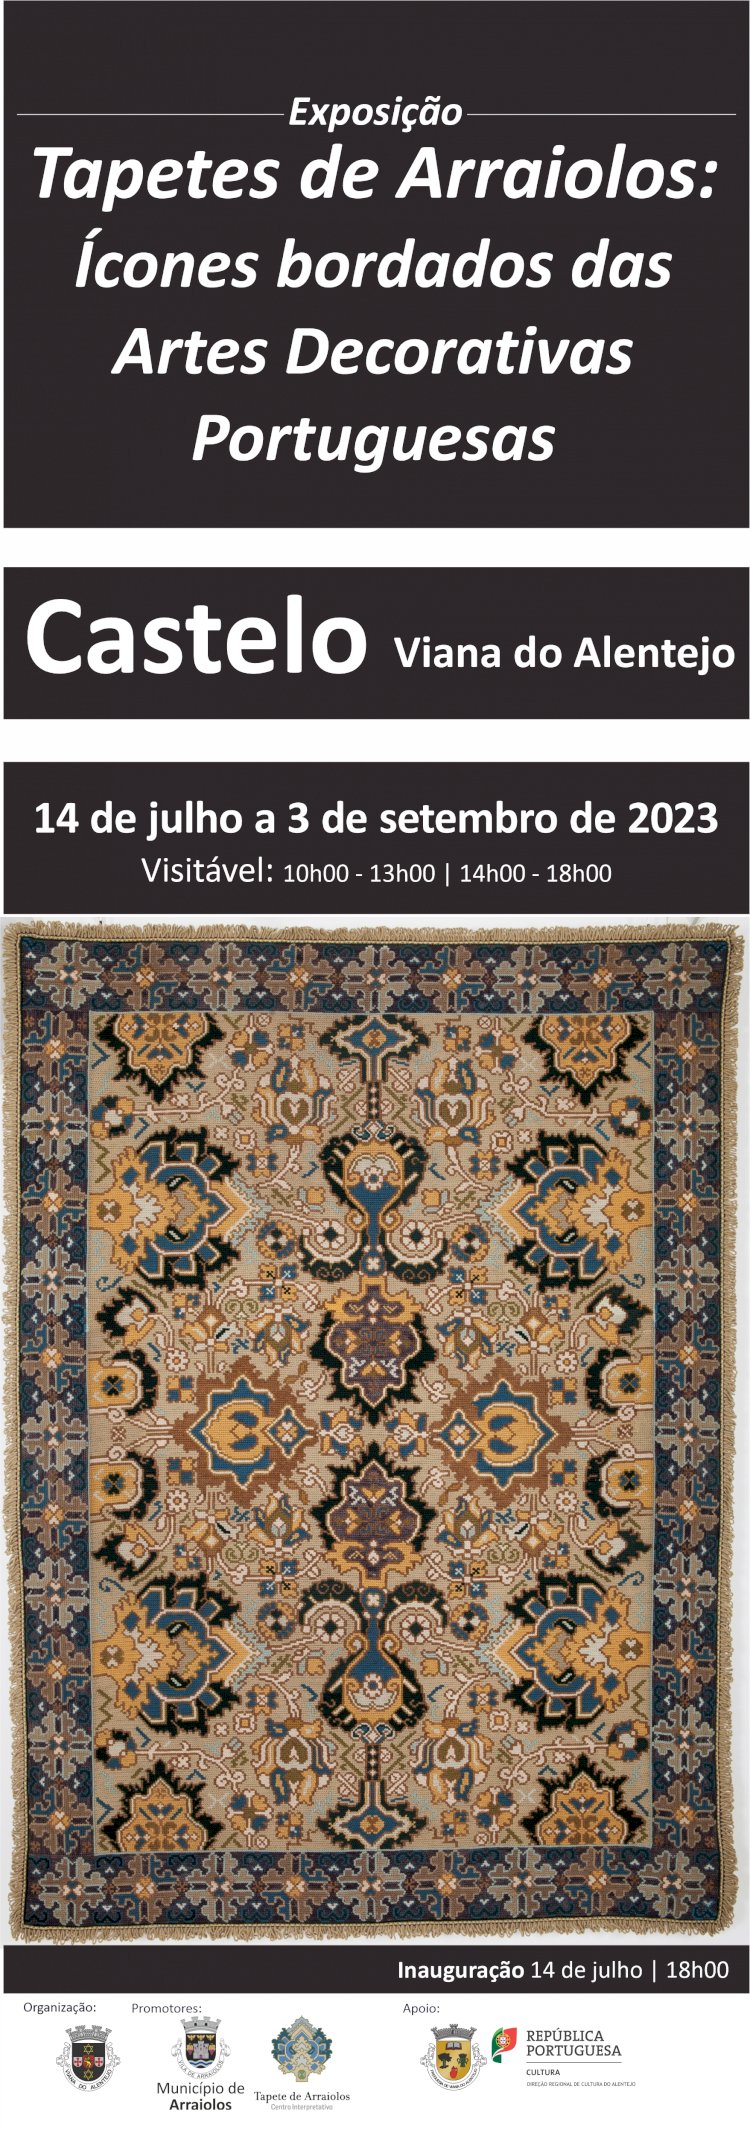 Tapetes de Arraiolos em exposição no Castelo de Viana do Alentejo